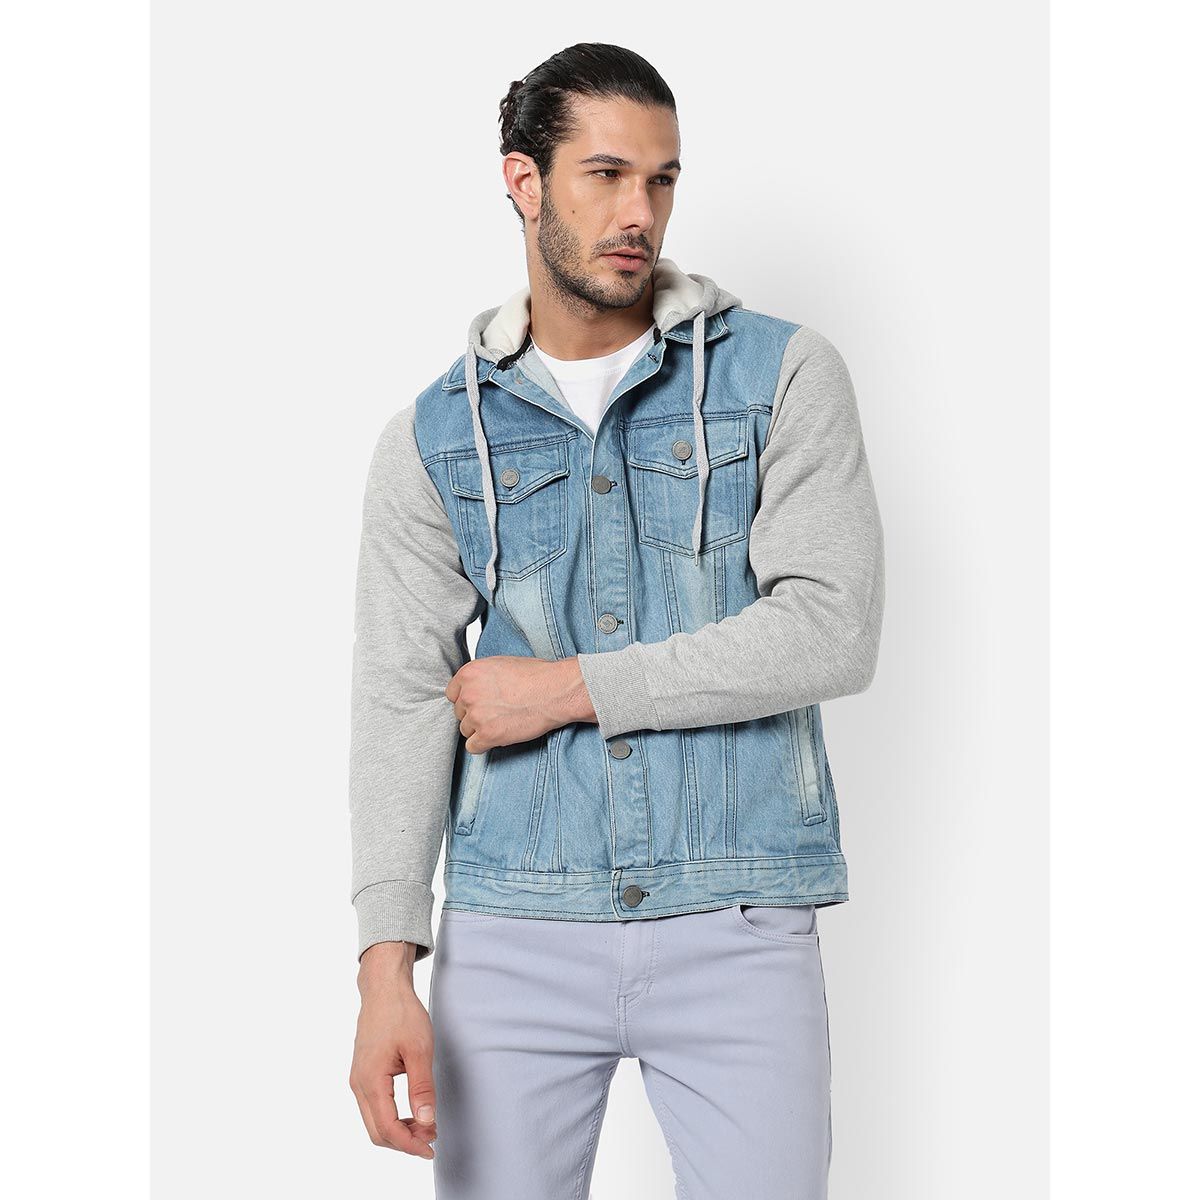 Campus Sutra Men's Light-Washed Blue & Grey Regular Fit Denim Jacket for  Winter Wear |